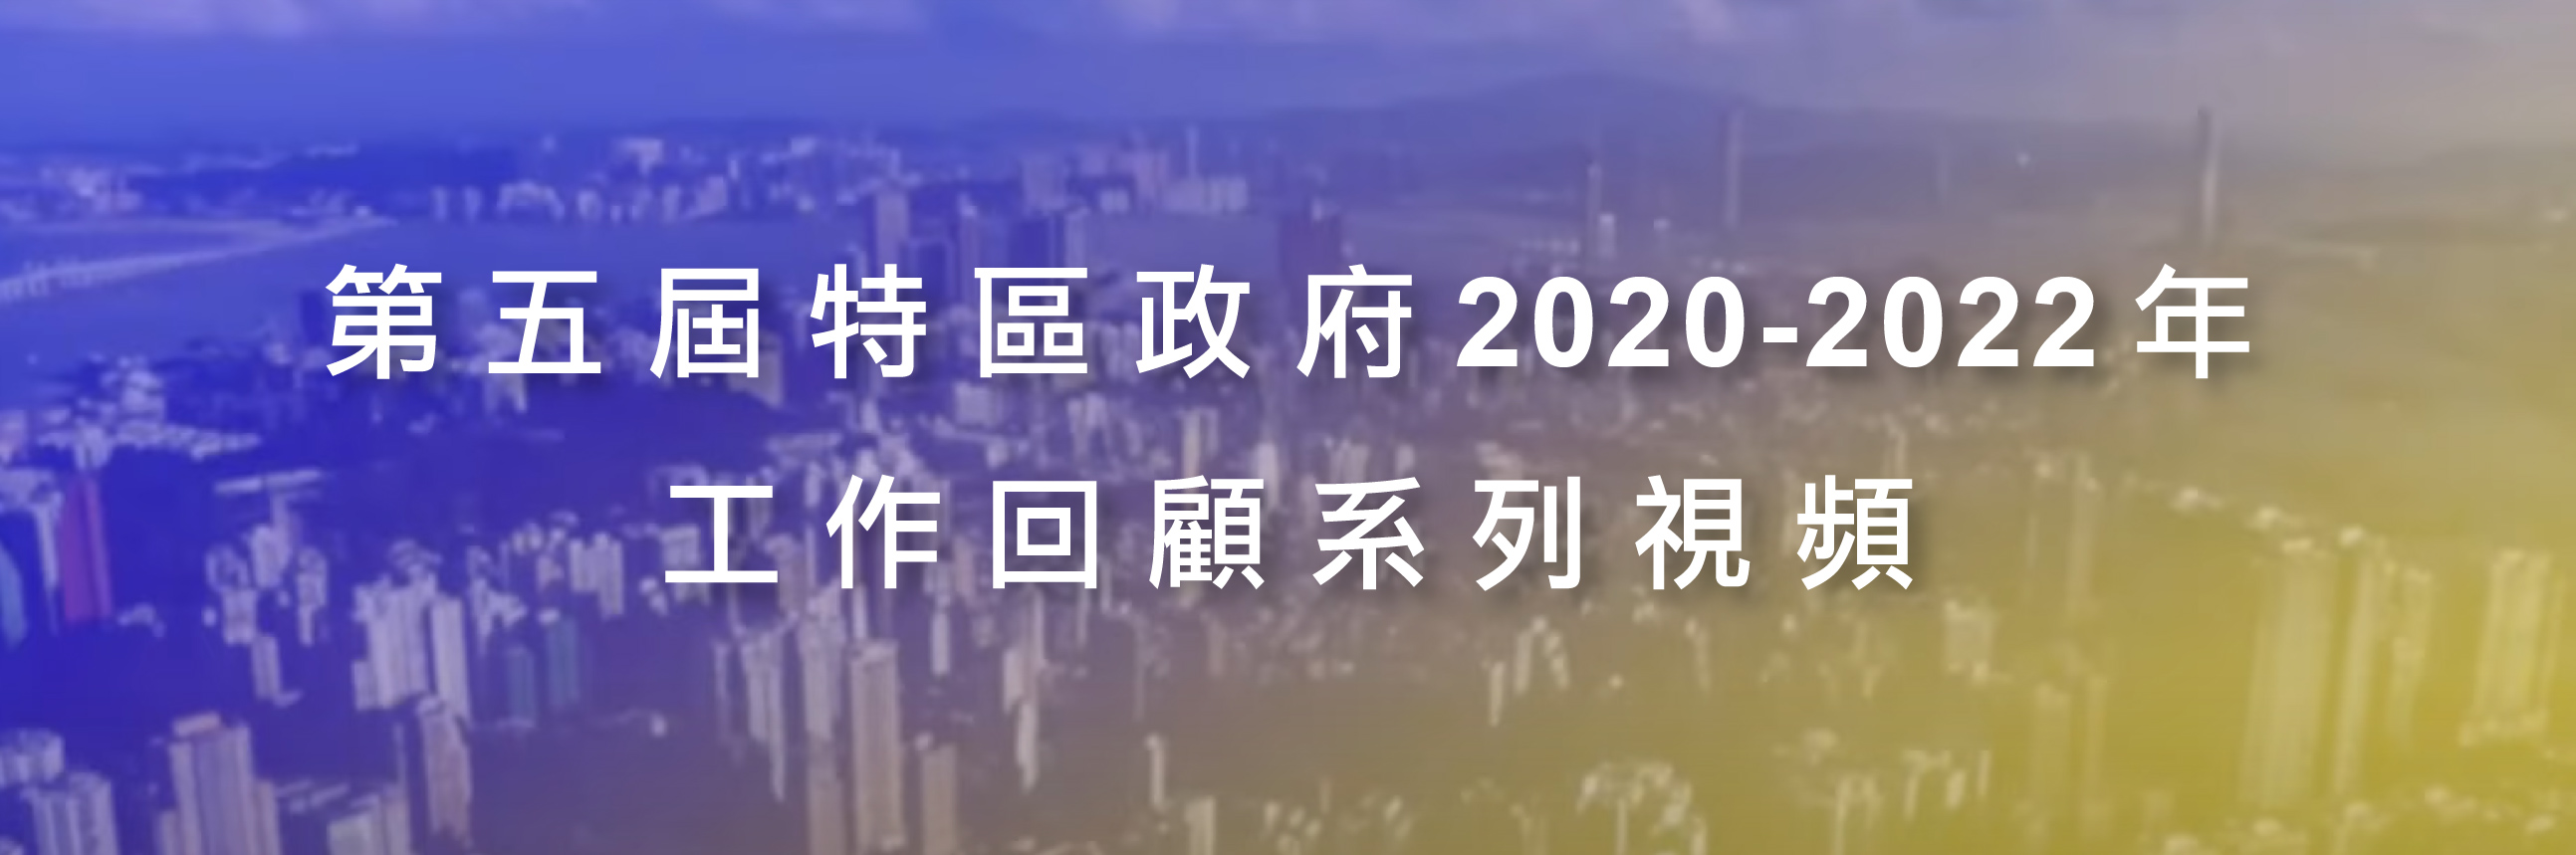 第五屆特區政府2020-2022年工作回顧系列視頻